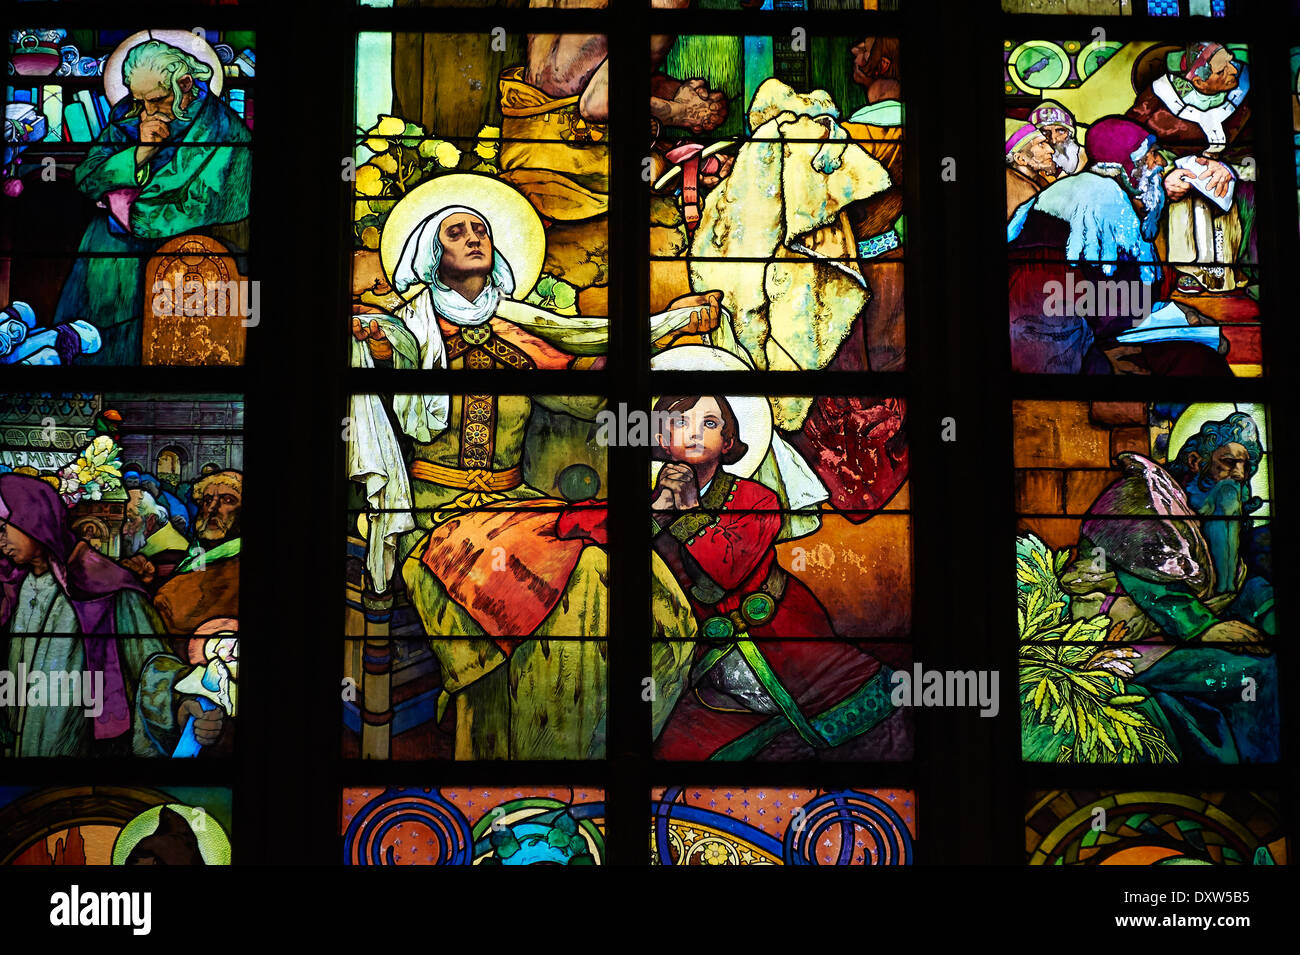 Vitrail de l'Art Nouveau, Alfons Mucha, cathédrale Saint-Guy de Prague, République Tchèque Banque D'Images